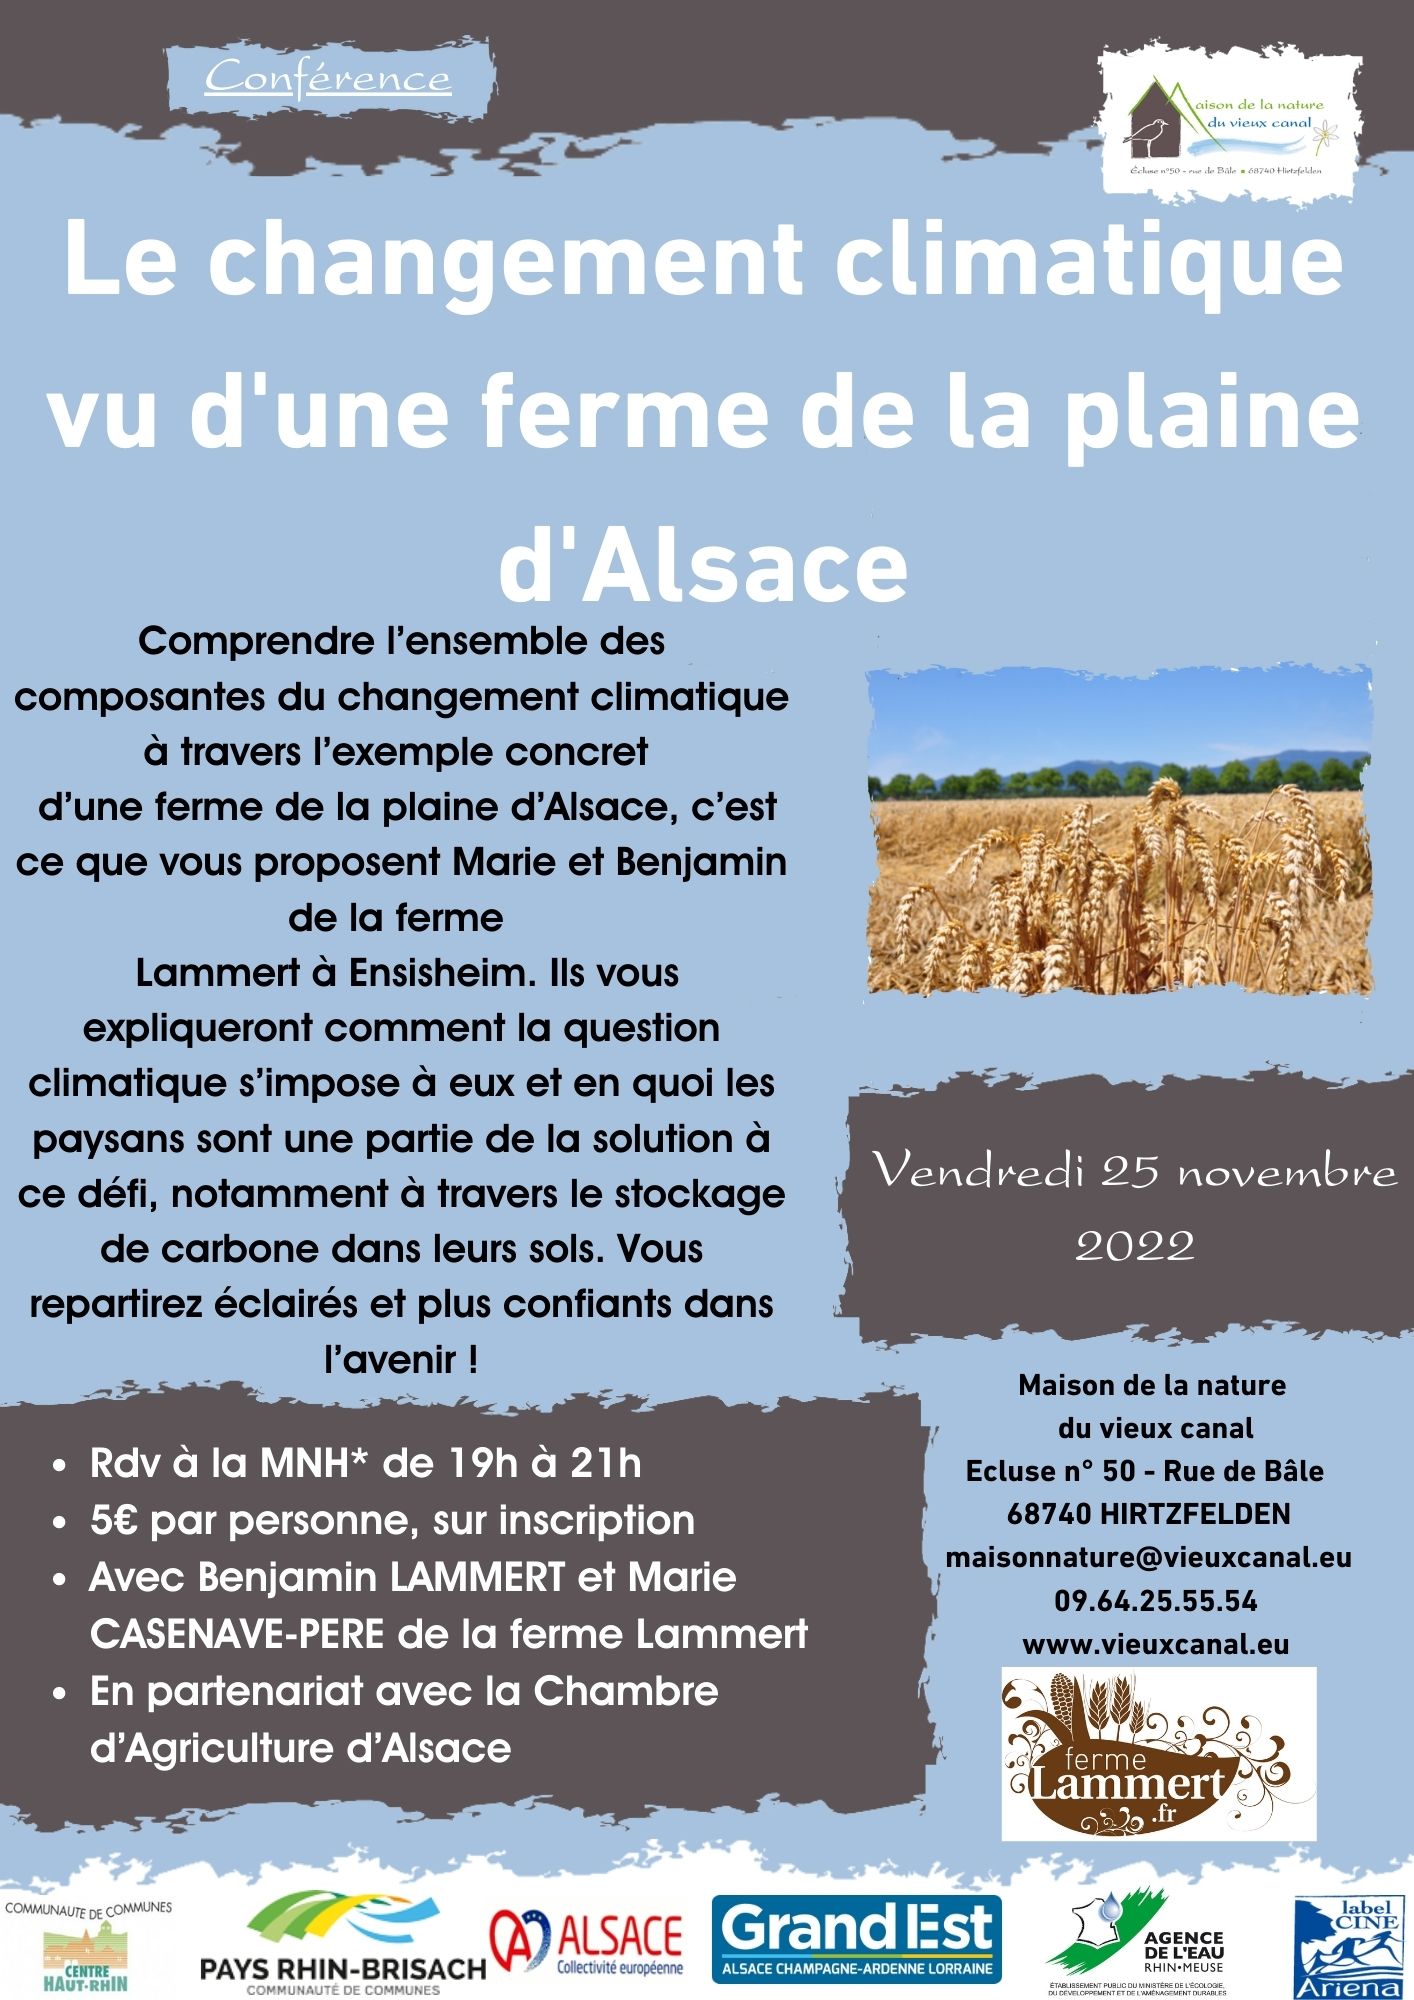 Le changement climatique vu d’une ferme de la plaine d’Alsace